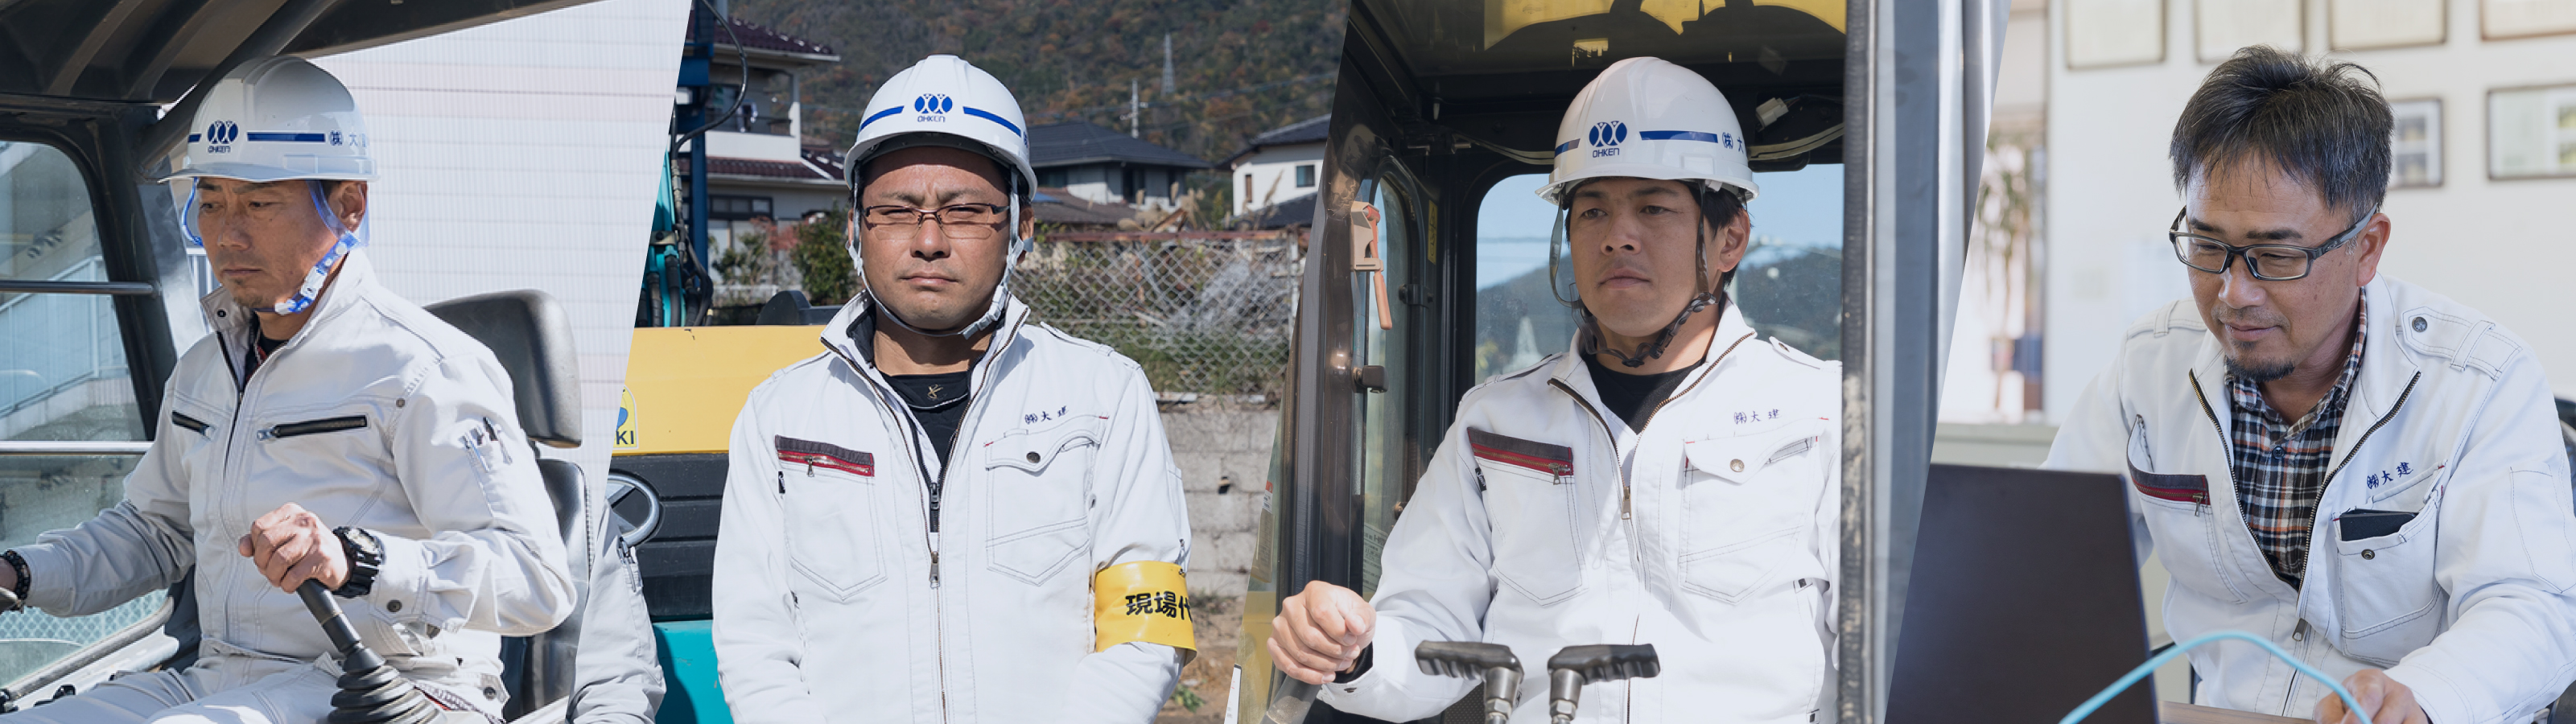 Kỹ sư giám sát xây dựng-thi công cầu đường (làm việc tại Nhật Bản) - Công ty Cổ Phần Ohken